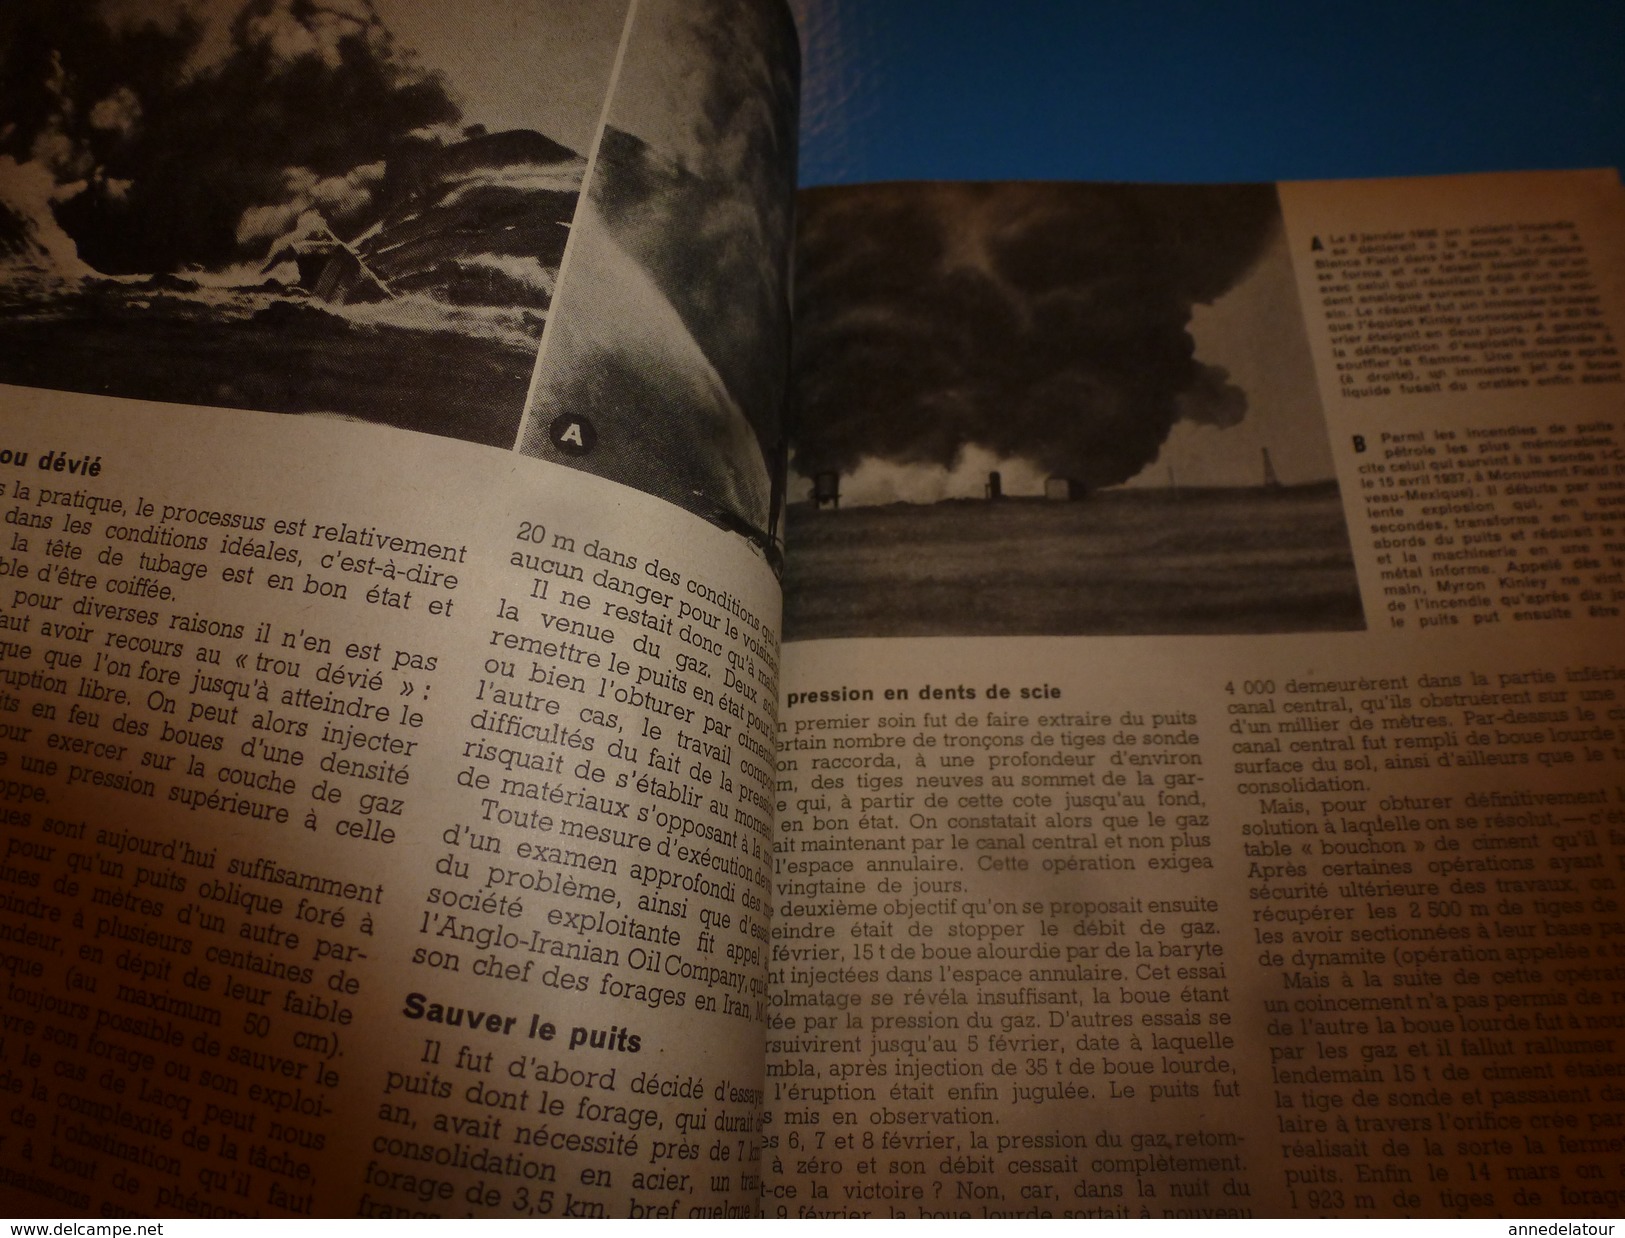 1952 SCIENCE Et VIE  N° 417 ---> Miron Kinley Pompier Des Puits De Pétrole; Les étranges Chauves-souris; Etc - Wissenschaft